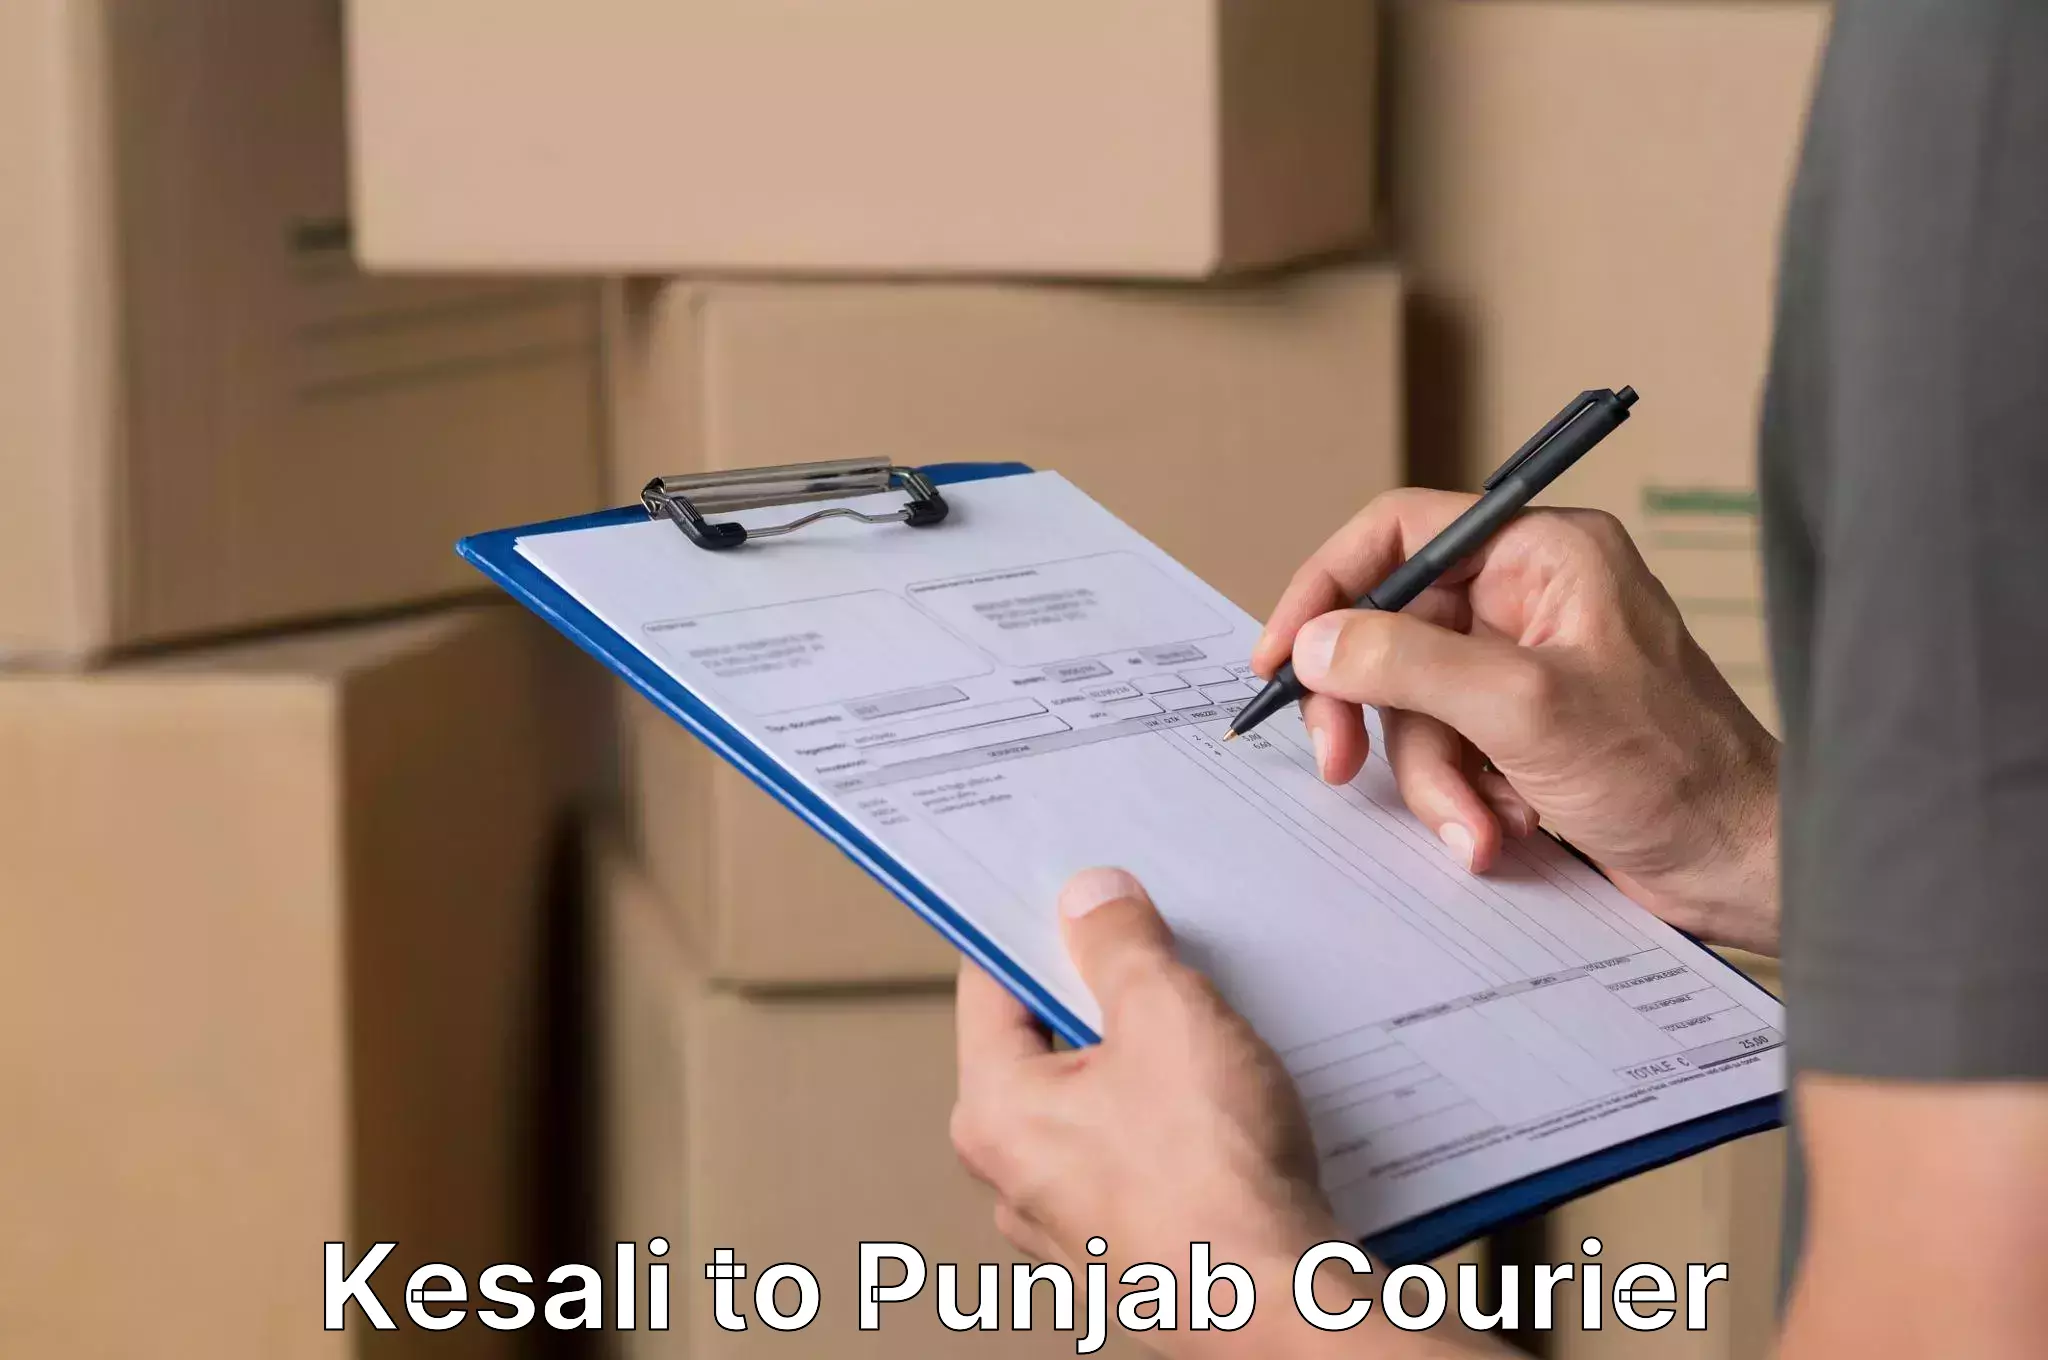 Residential furniture movers Kesali to Punjab